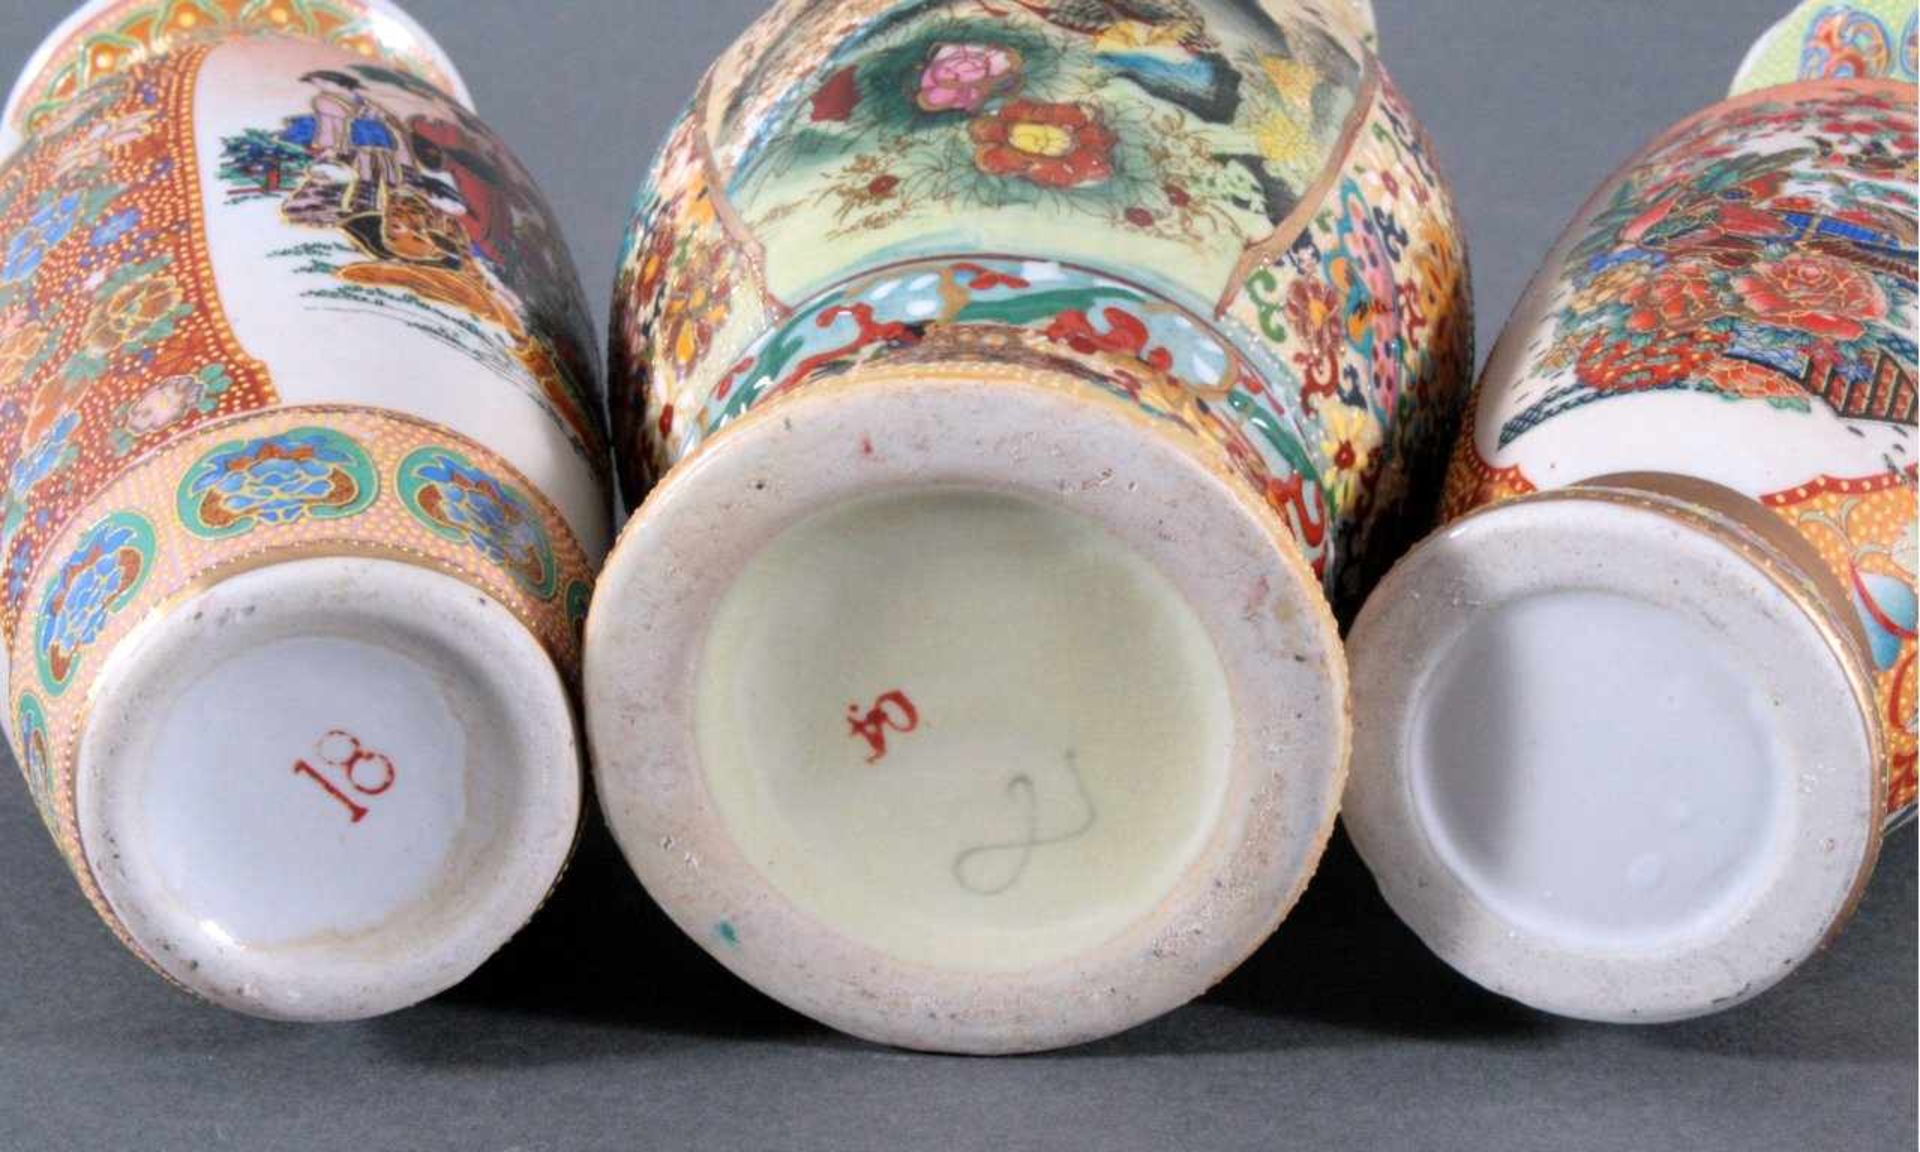 3 asiatische VasenPolychrom bemalt mit Alltasgszene und Tieren, Goldstaffagen,ohne Marke auf der - Bild 2 aus 2